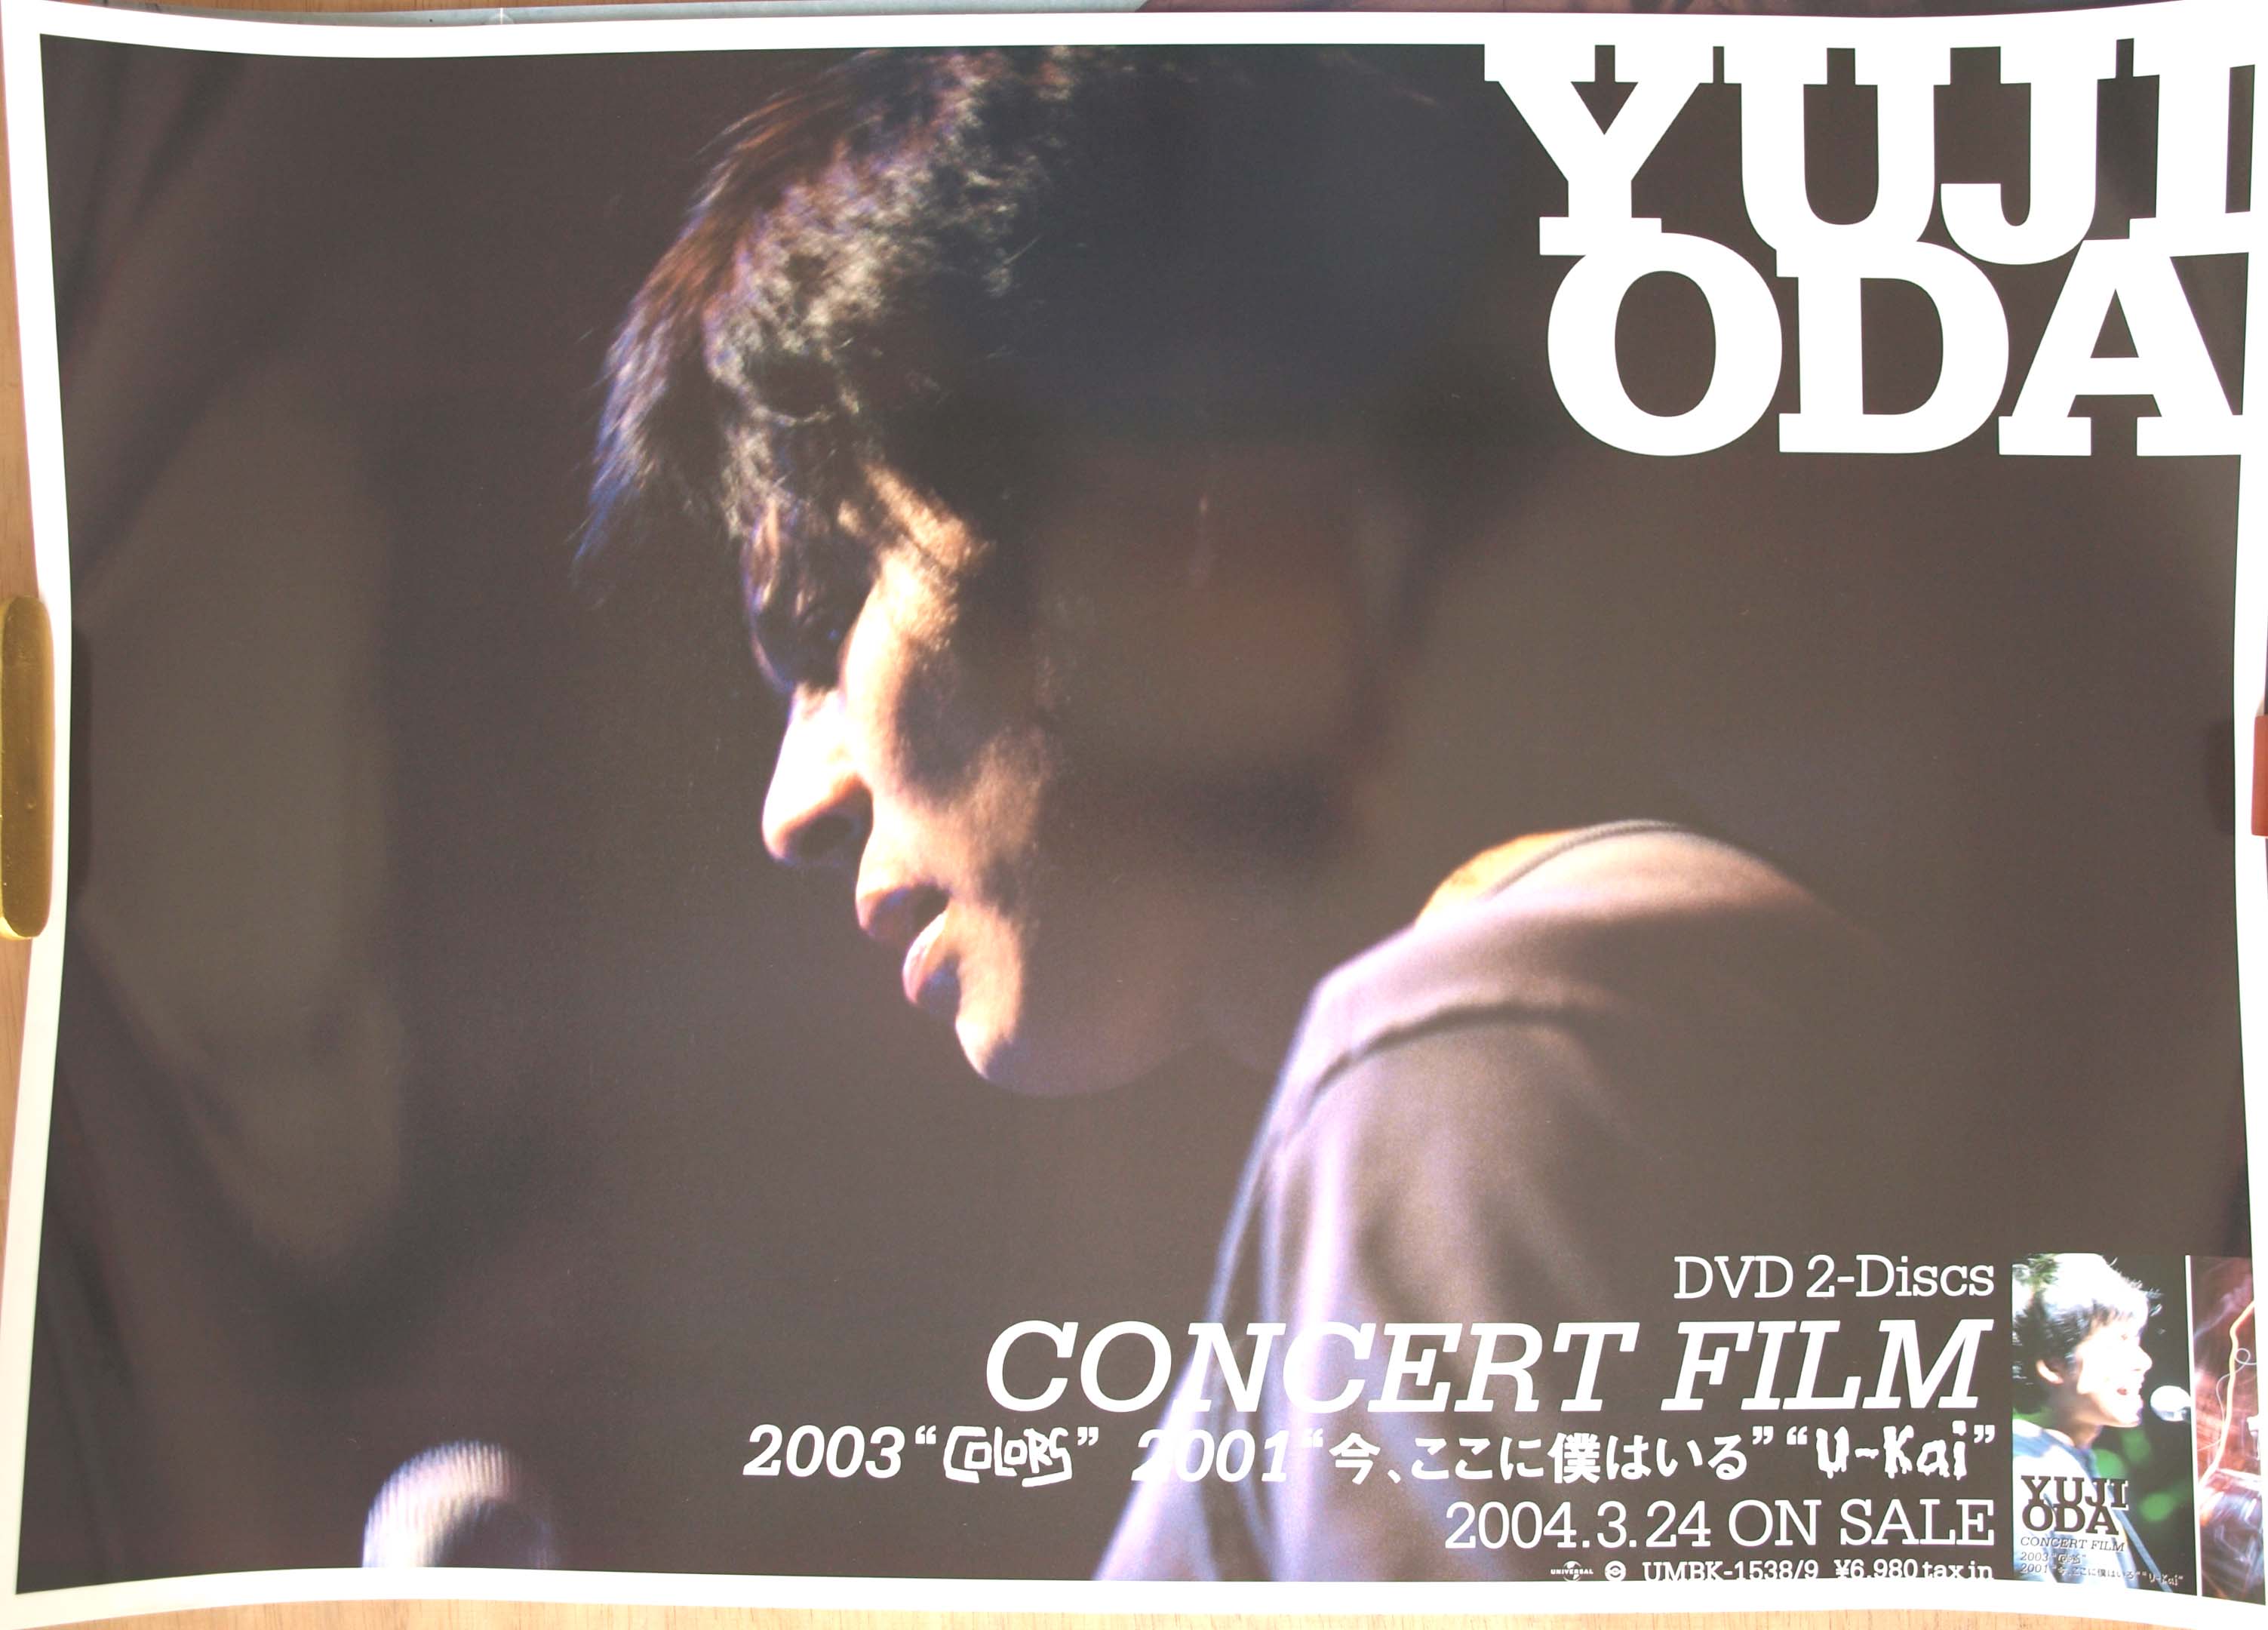 織田裕二 「YUJI ODA CONCERT FILM 2003」のポスター